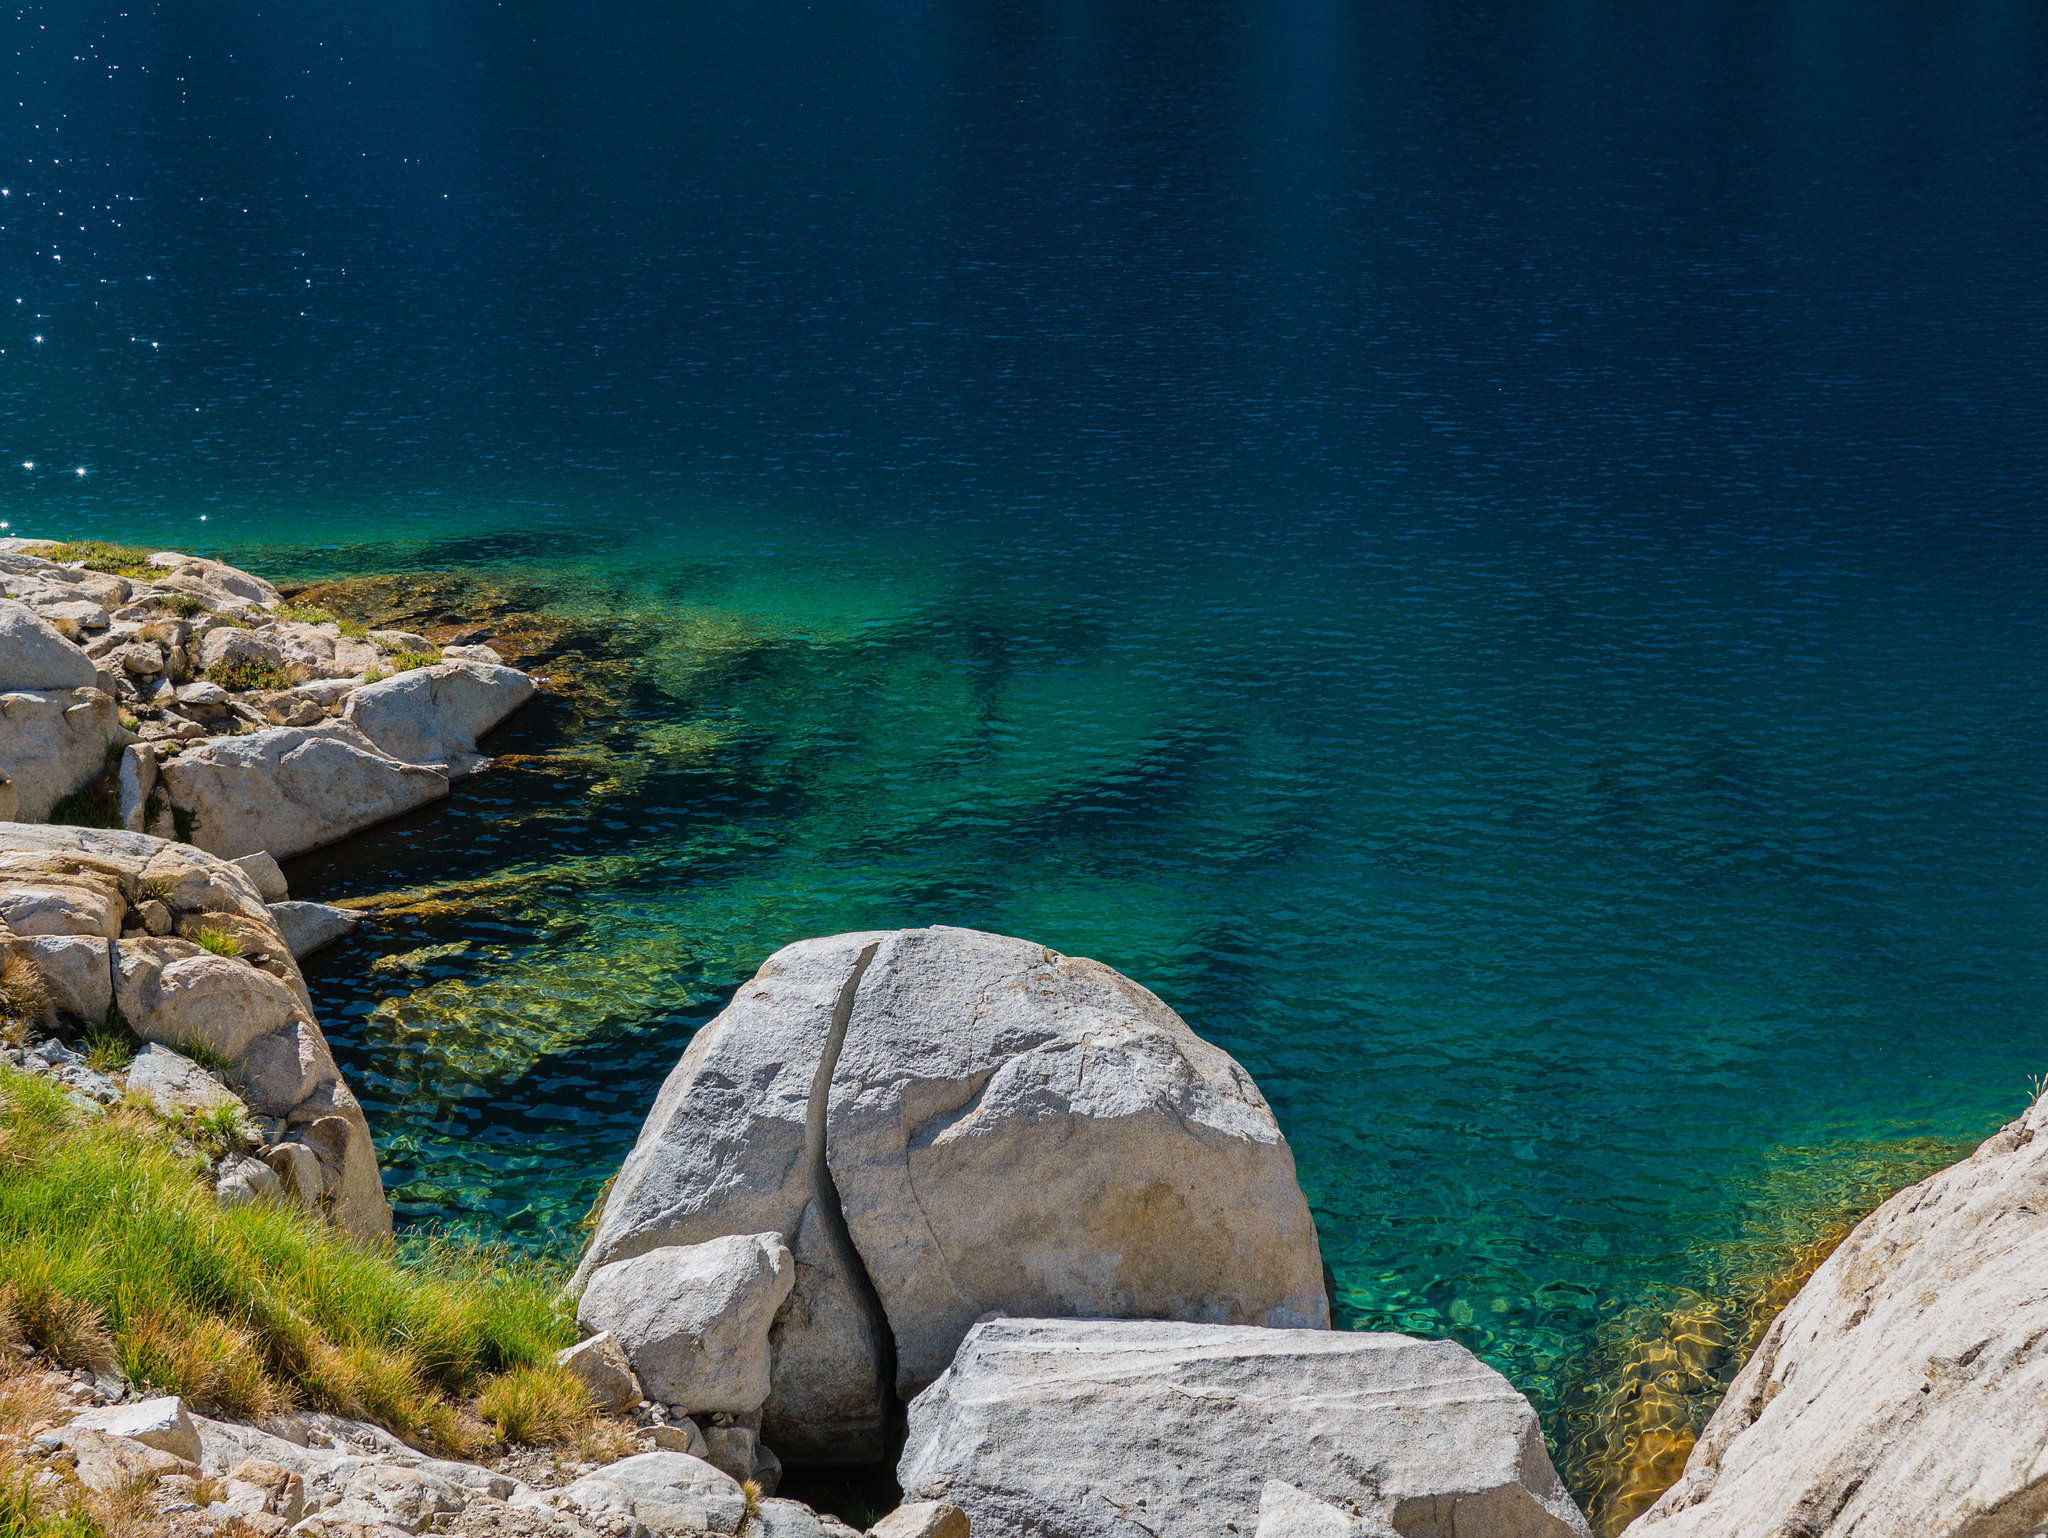 Precipice Lake's amazing water